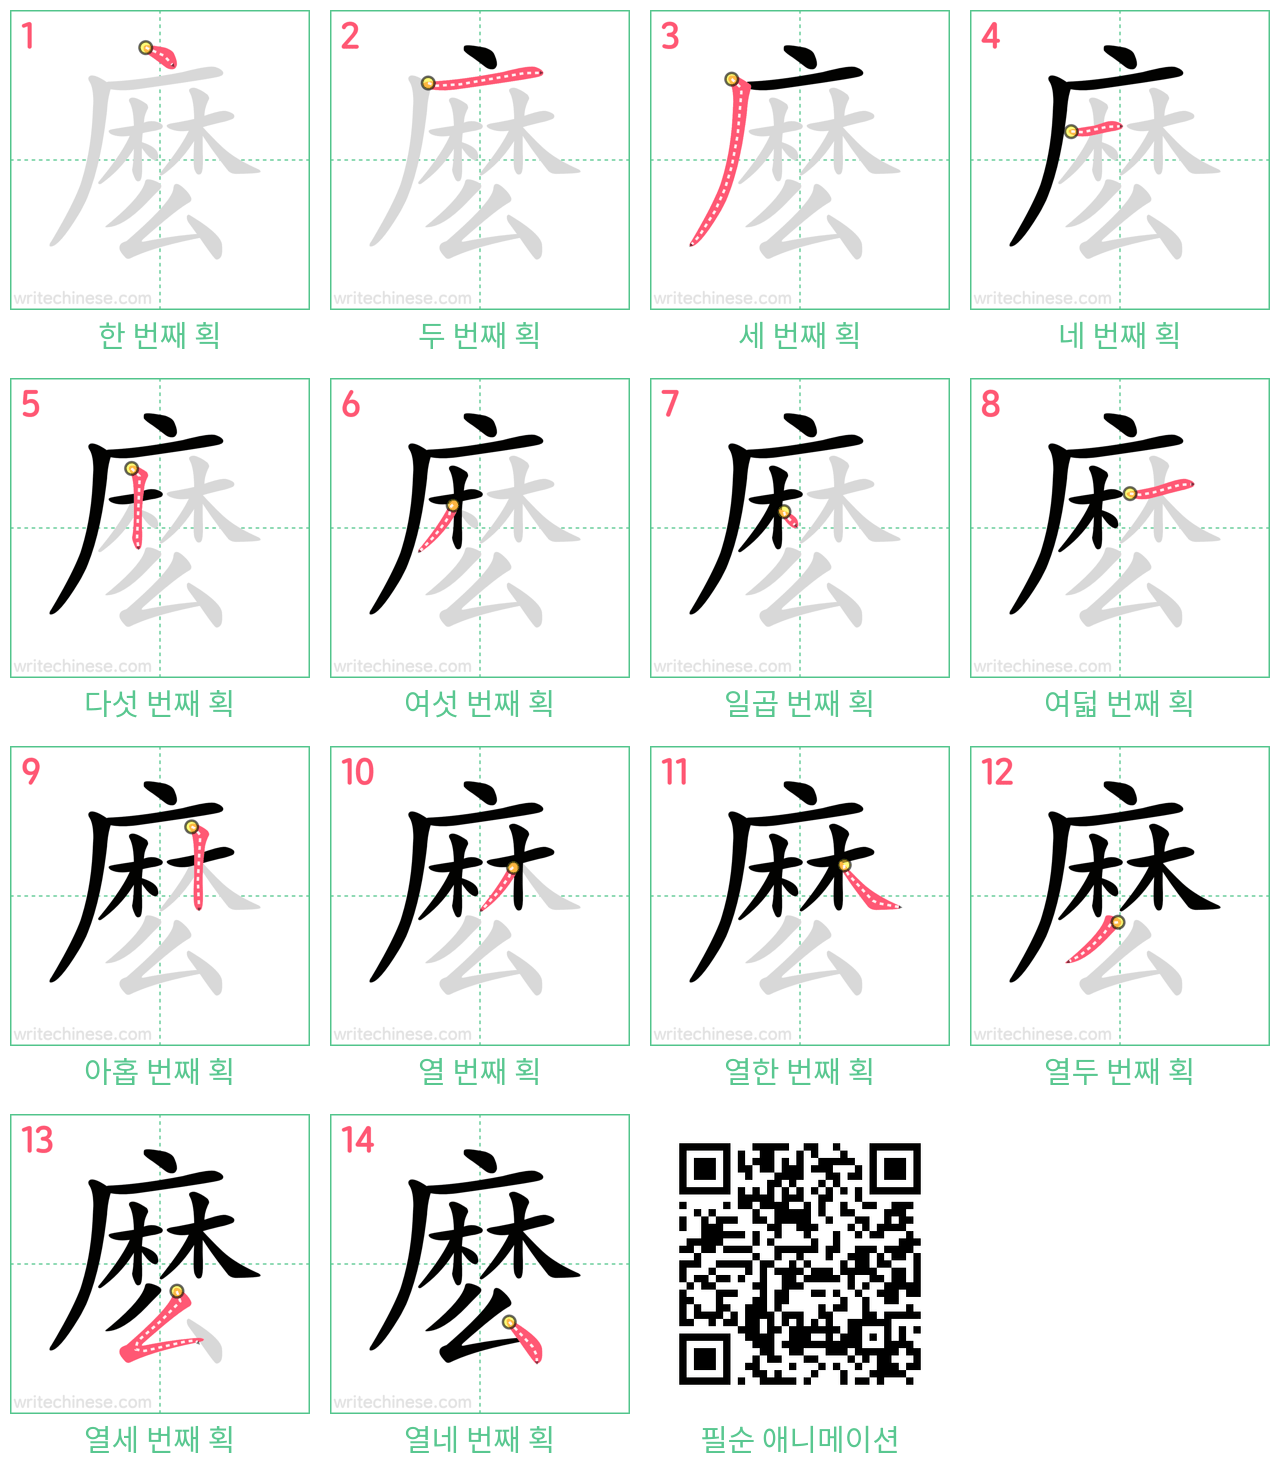 麽 step-by-step stroke order diagrams